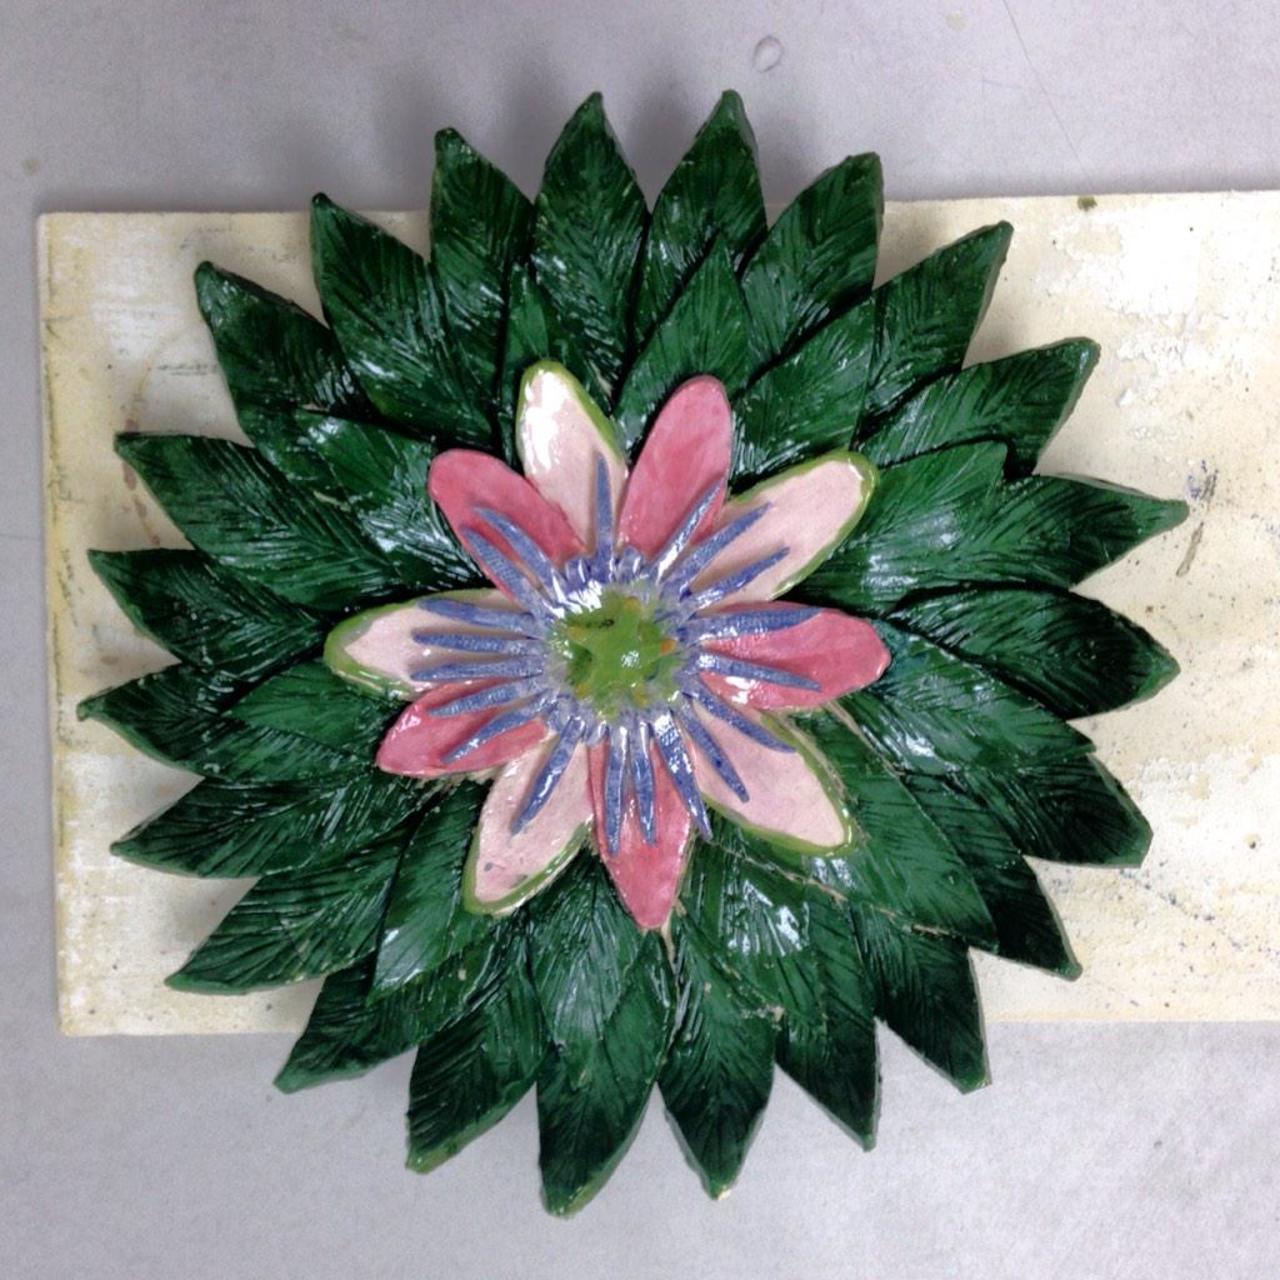 Flower platter by Blair @EVVDaySchool #3d #ceramics #handbuilding #art http://t.co/0eFDyyupK3